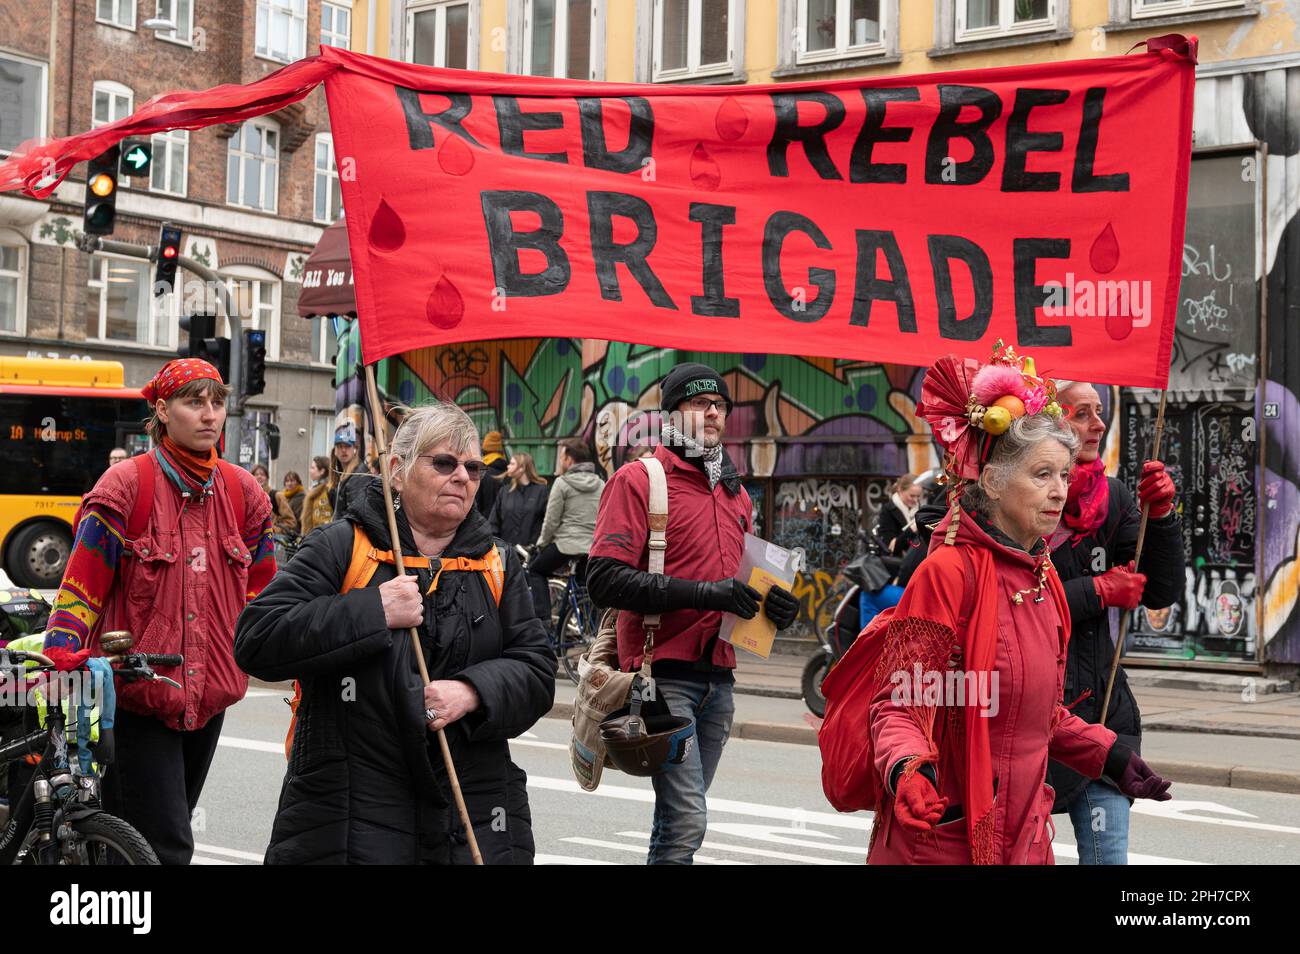 Les manifestants de la brigade rebelle rouge et l'extinction la rébellion a défilé dans les rues de Copenhague, Danemark, le 25 mars 2023 Banque D'Images